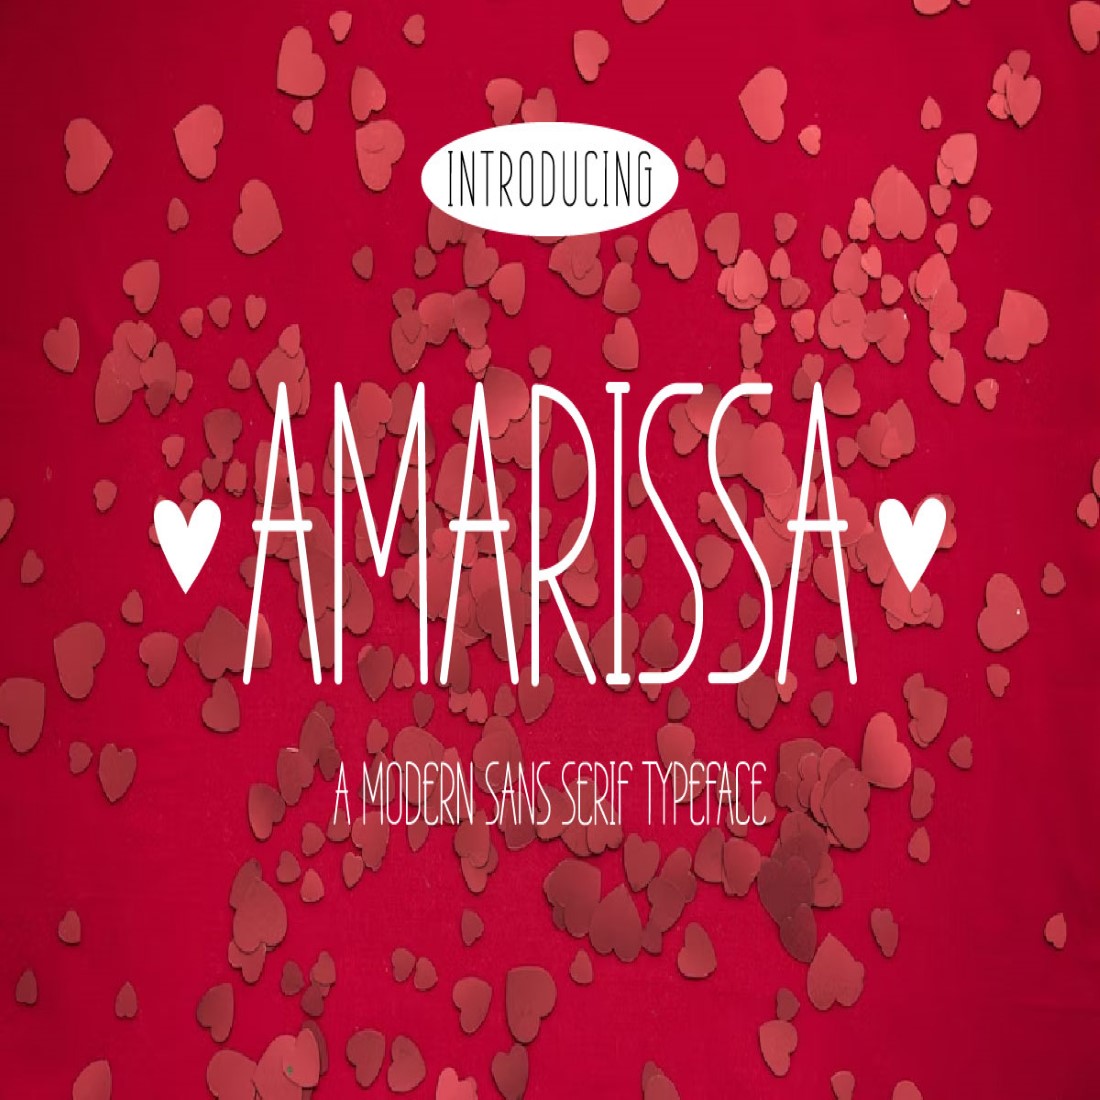 Amarissa cover image.